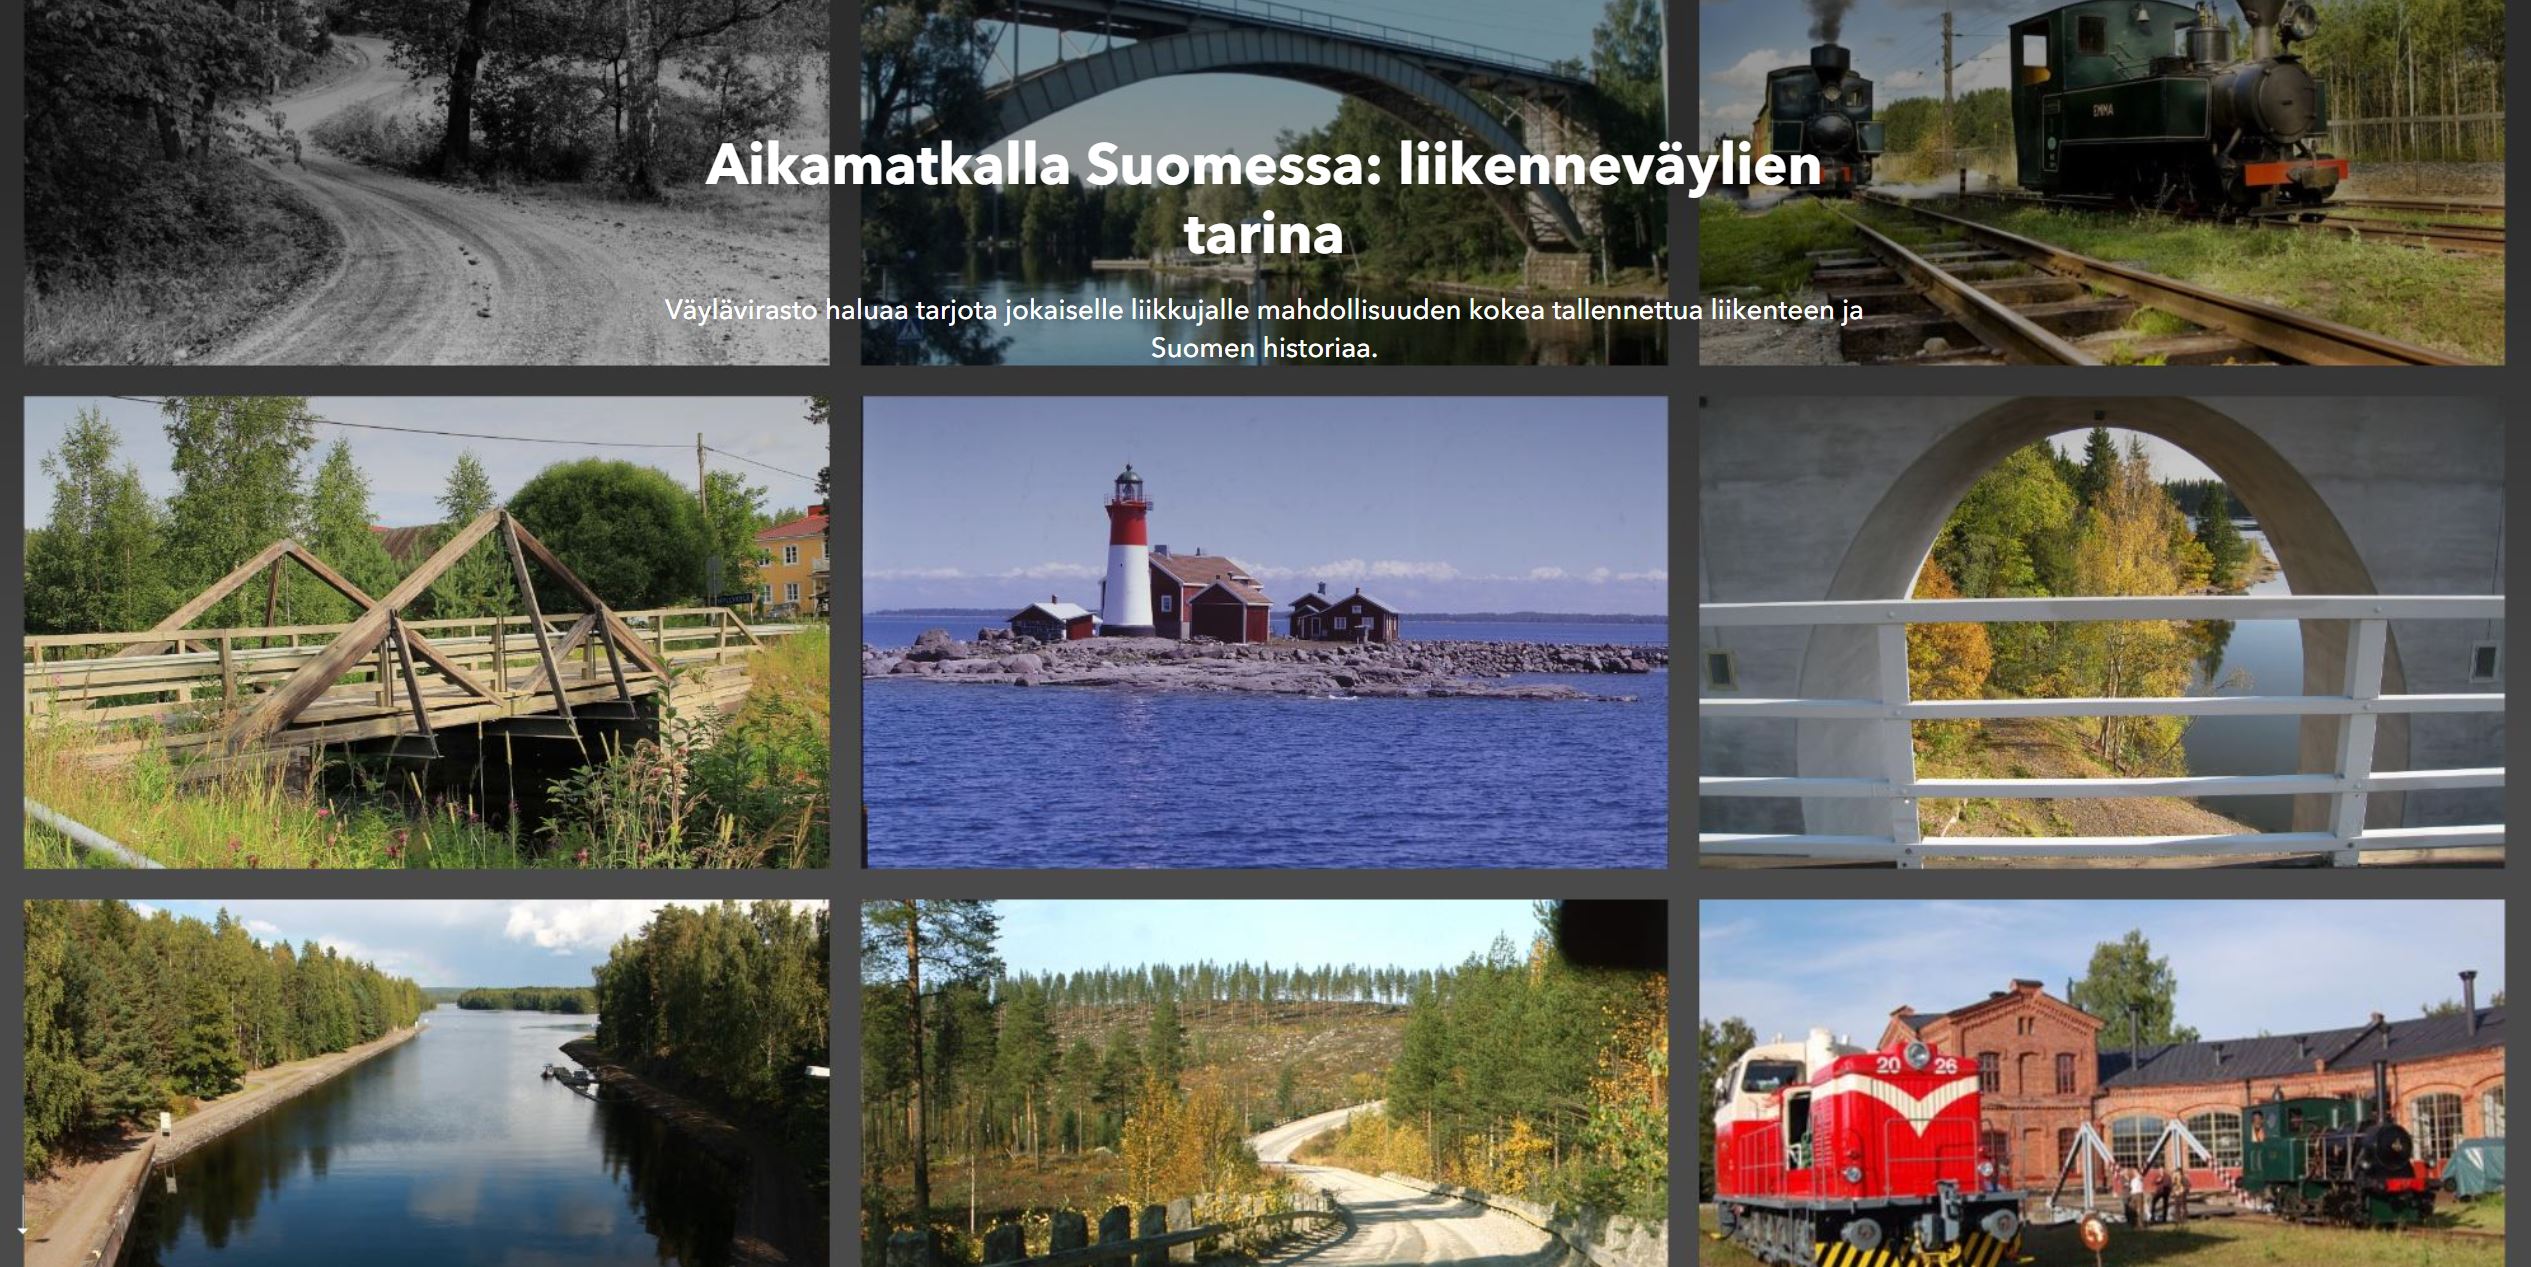 Aikamatkalla Suomessa -tarinakartan etusivu. Kuvia teistä, silloista, junaradoista ja vesiväyläkohteista.